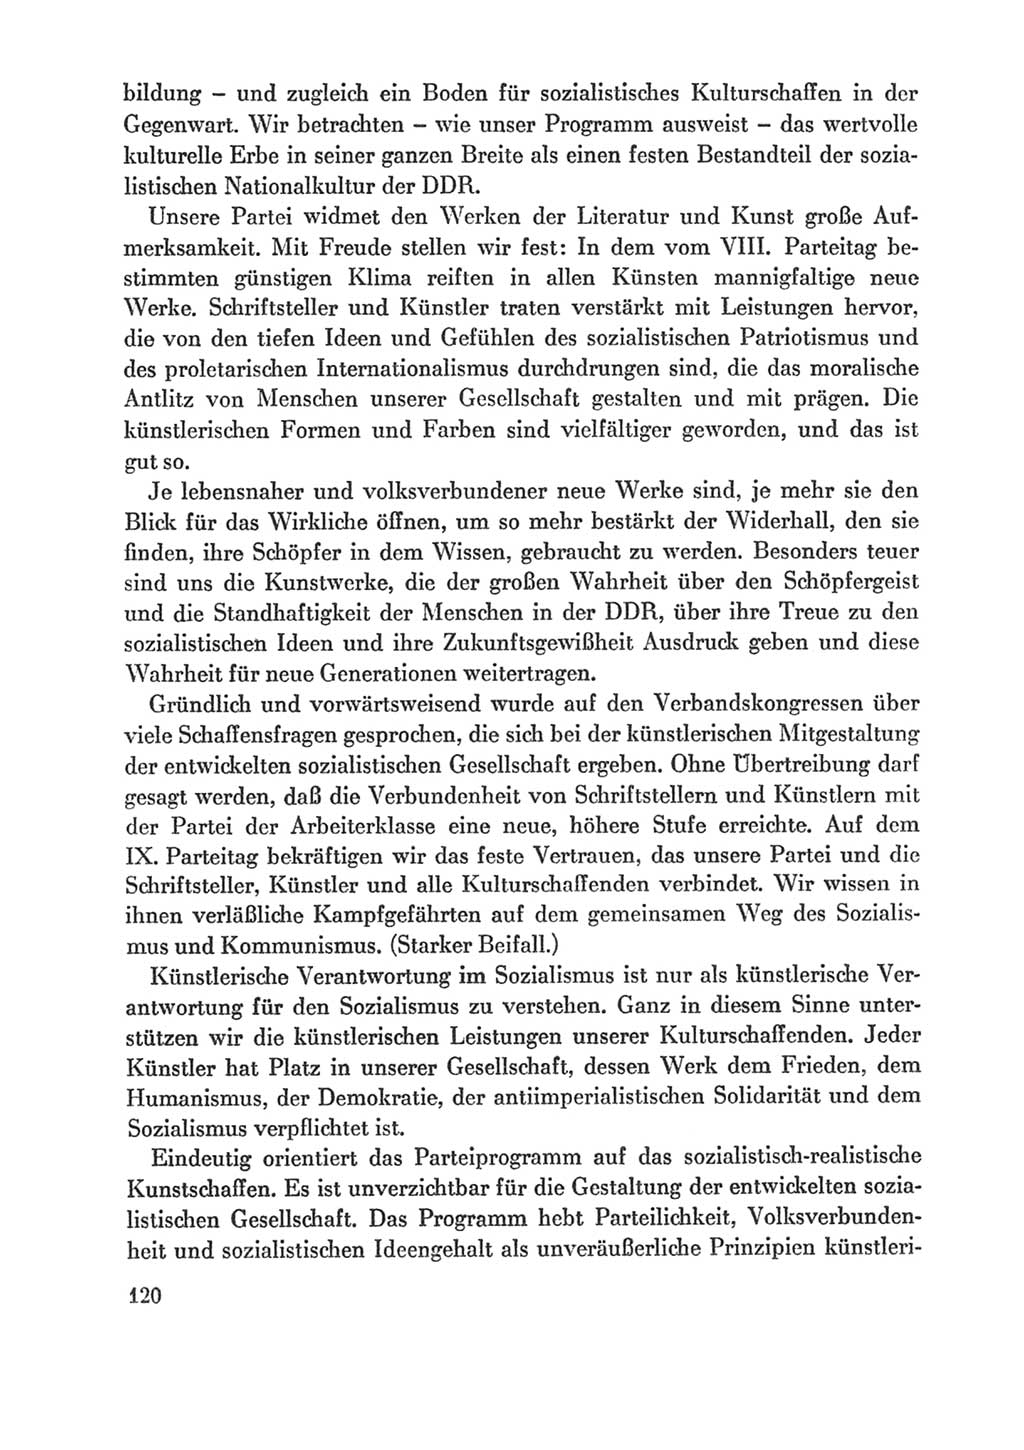 Protokoll der Verhandlungen des Ⅸ. Parteitages der Sozialistischen Einheitspartei Deutschlands (SED) [Deutsche Demokratische Republik (DDR)] 1976, Band 1, Seite 120 (Prot. Verh. Ⅸ. PT SED DDR 1976, Bd. 1, S. 120)